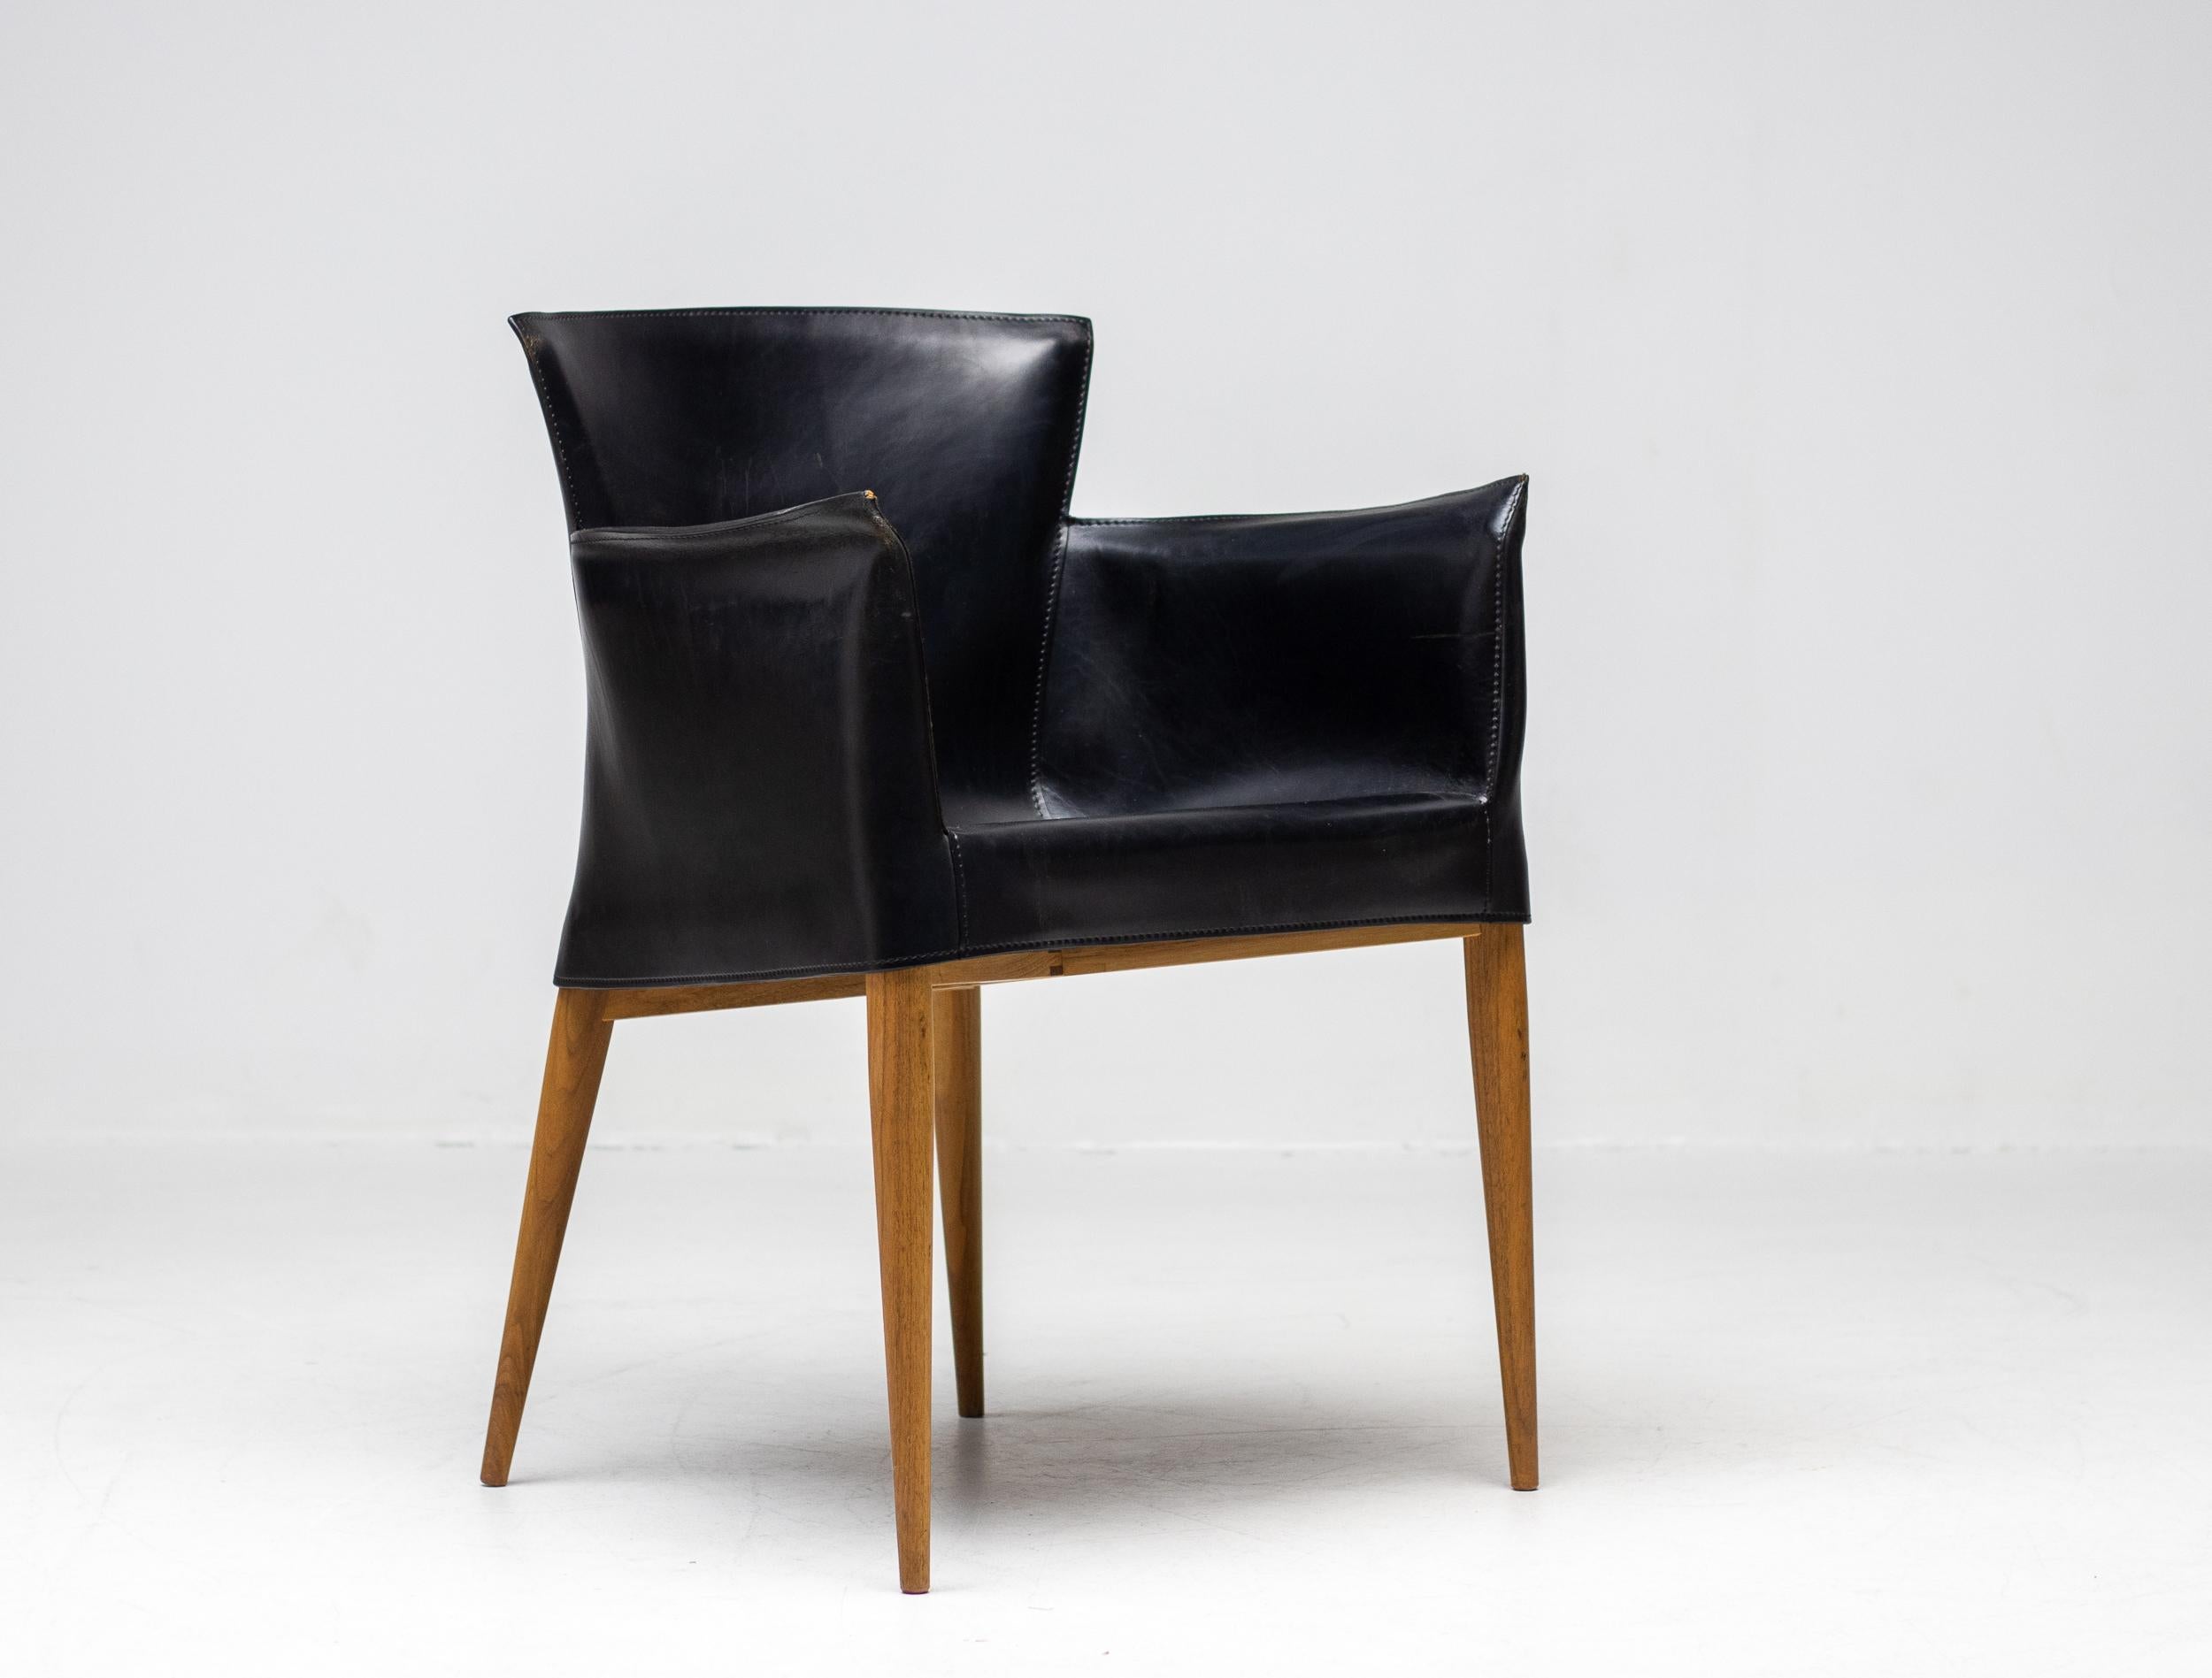 Seltene Carlo Bartoli für Matteo Grassi Vela Sessel in schwarzem italienischen Leder, hergestellt in Italien, um 1980.
Hochwertiger Stuhl mit handgenähter Lederpolsterung auf einem Rahmen aus Nussbaumholz. 
Das Design dieses Stuhls ist davon